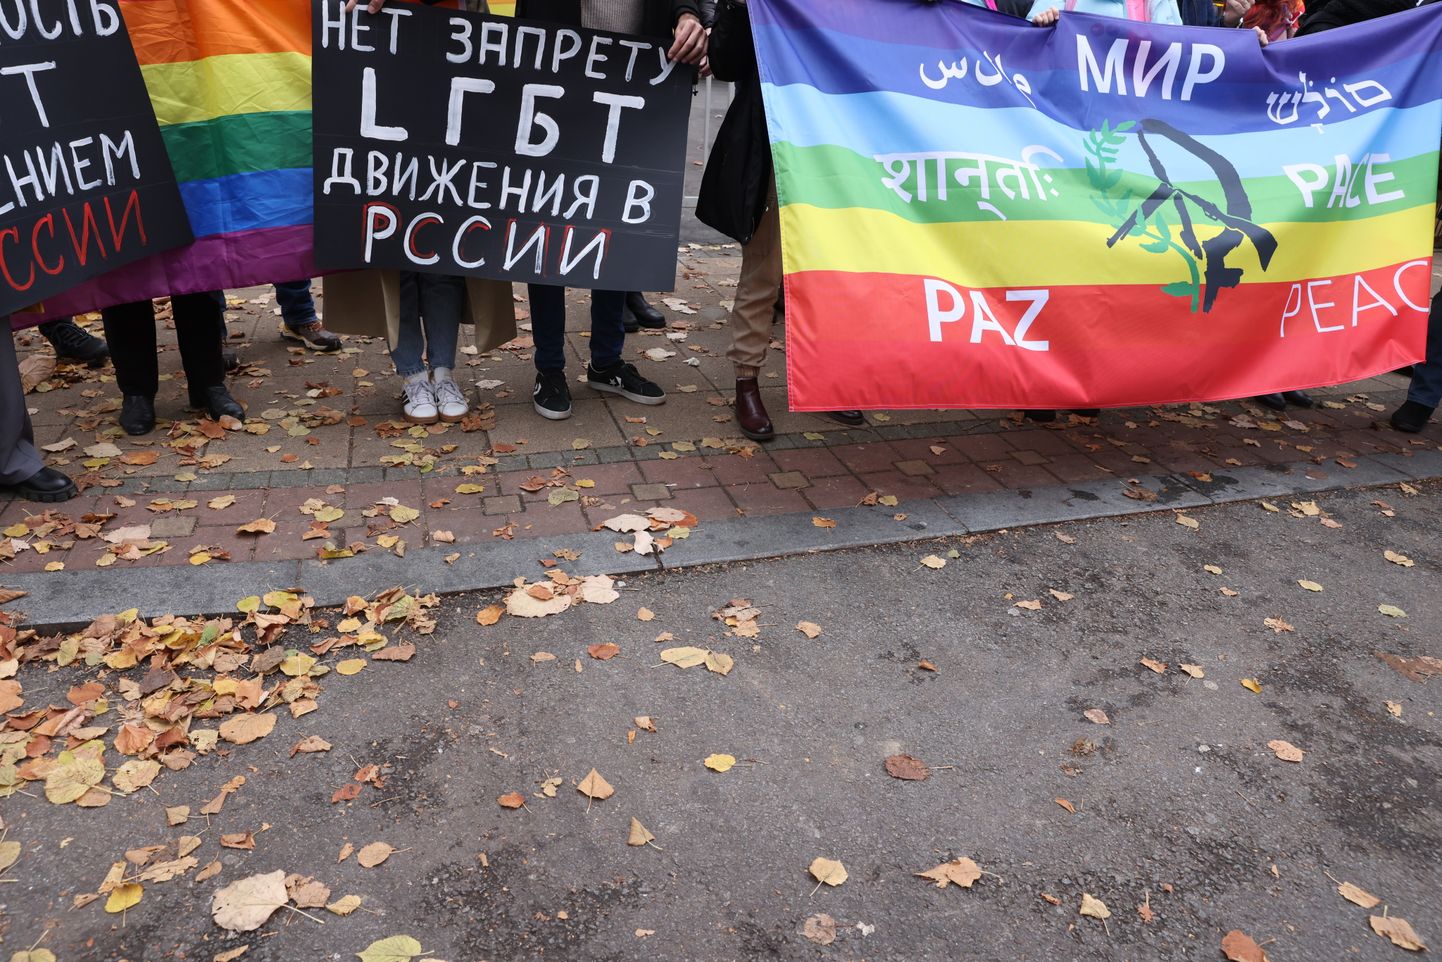 Aktivistid avaldamas meelt LGBT liikumise keelustamise vastu Vene saatkonna ees Belgradis.